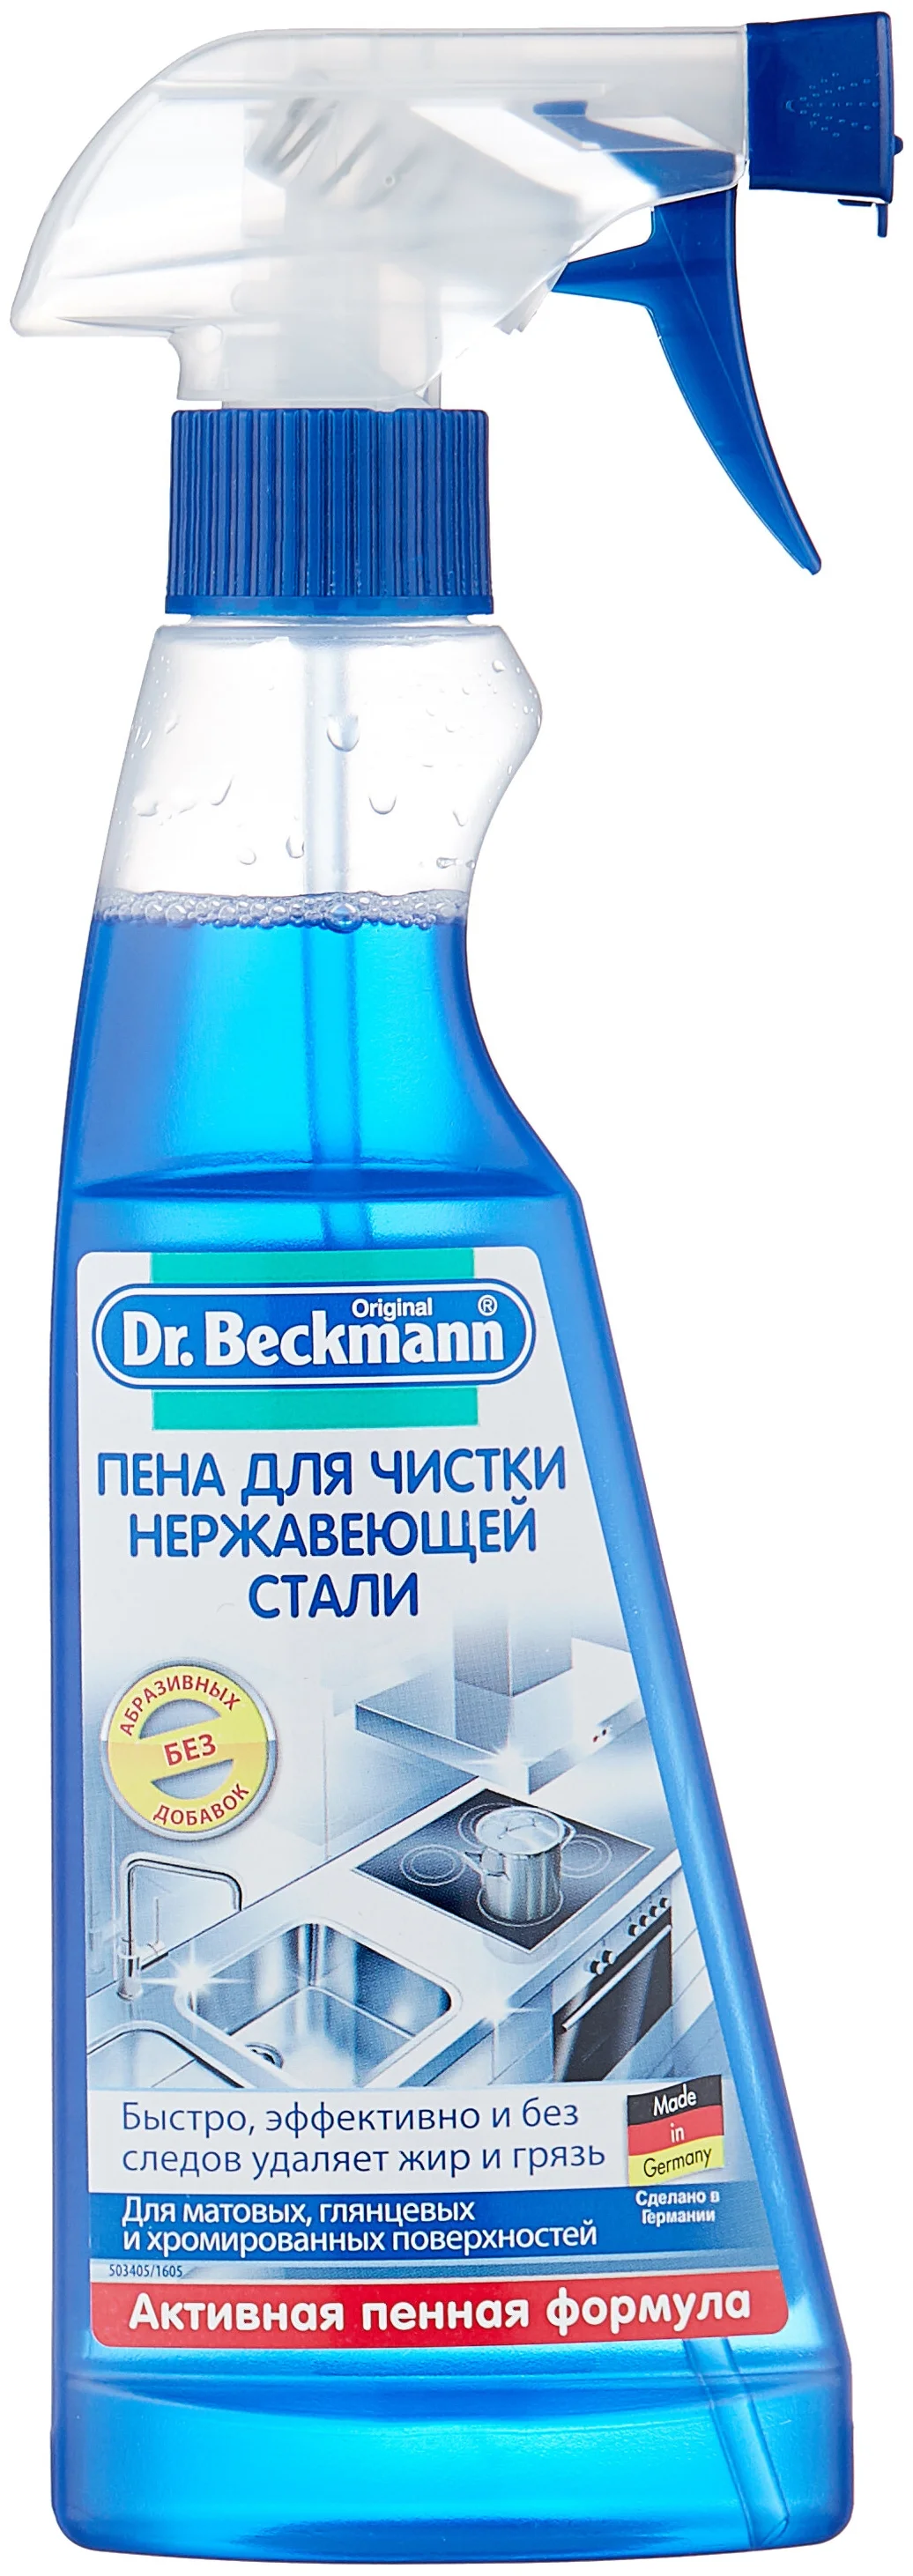 Пена для чистки нержавеющей стали Dr. Beckmann - содержит: кислоты